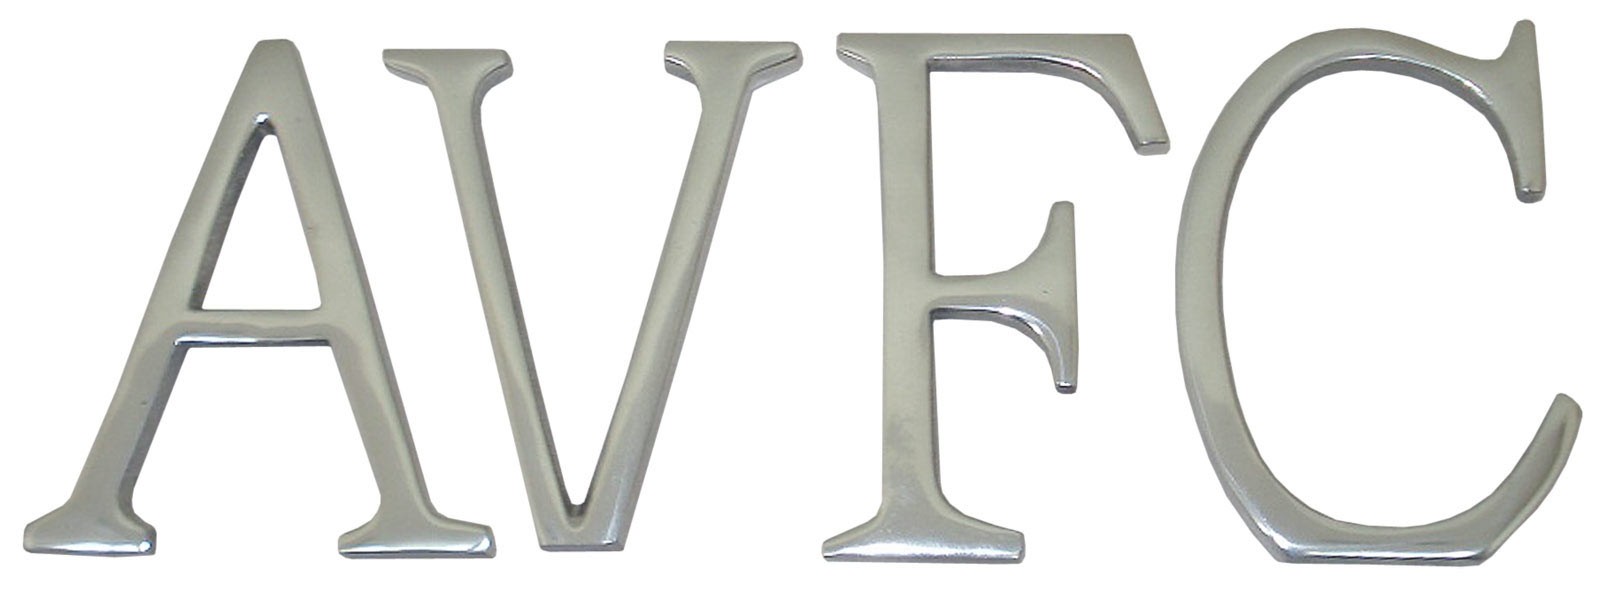 Aluminium AVFC Letters 6